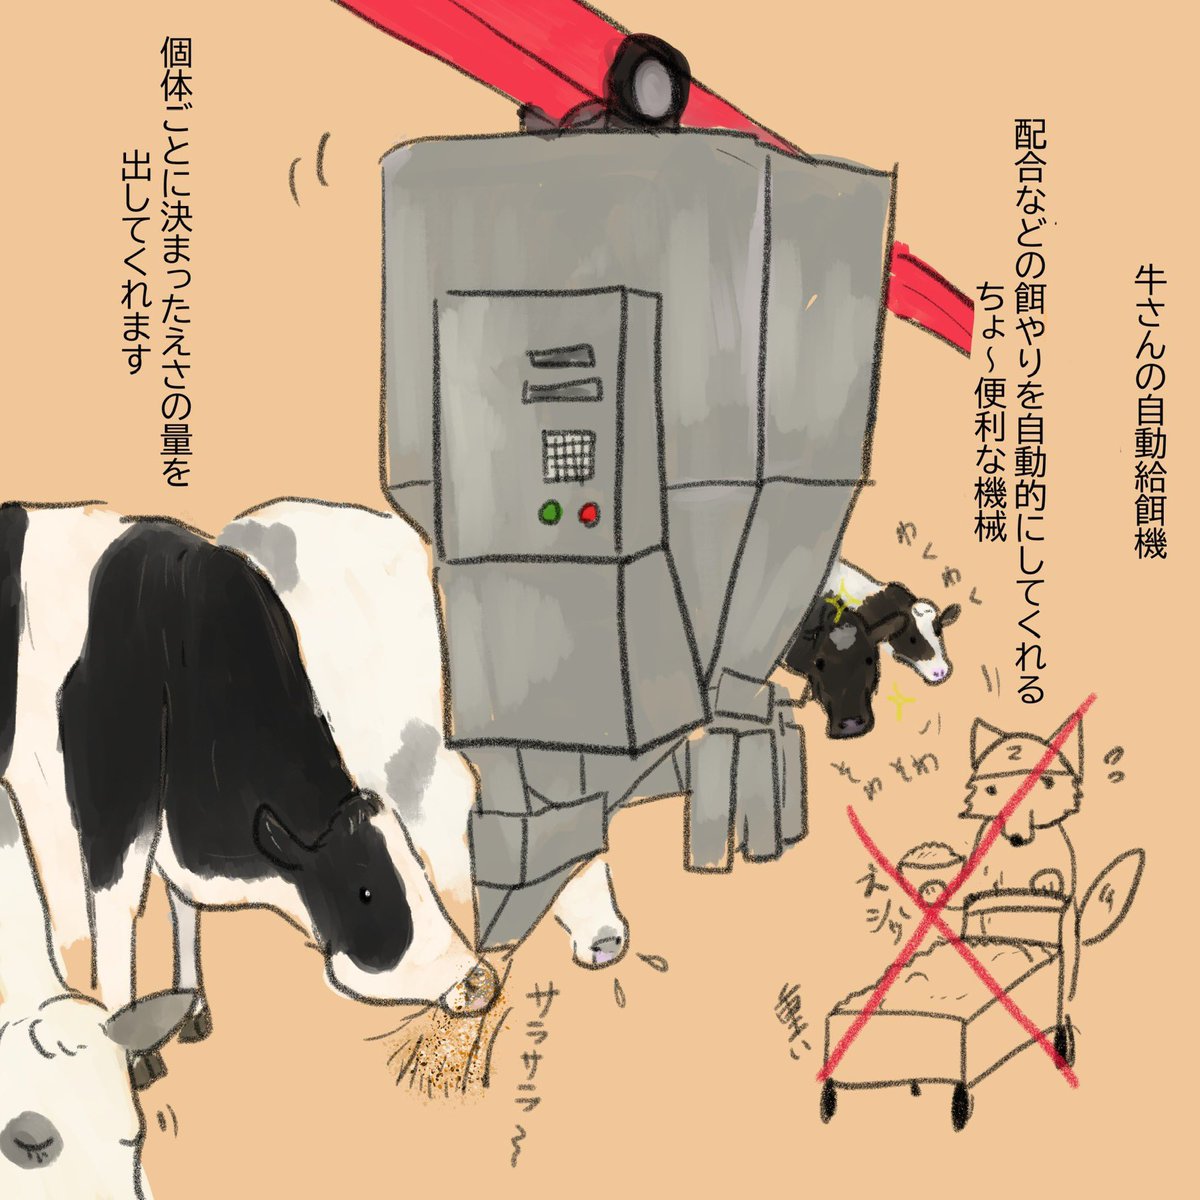 牛さんの自動給餌機の話🐄 